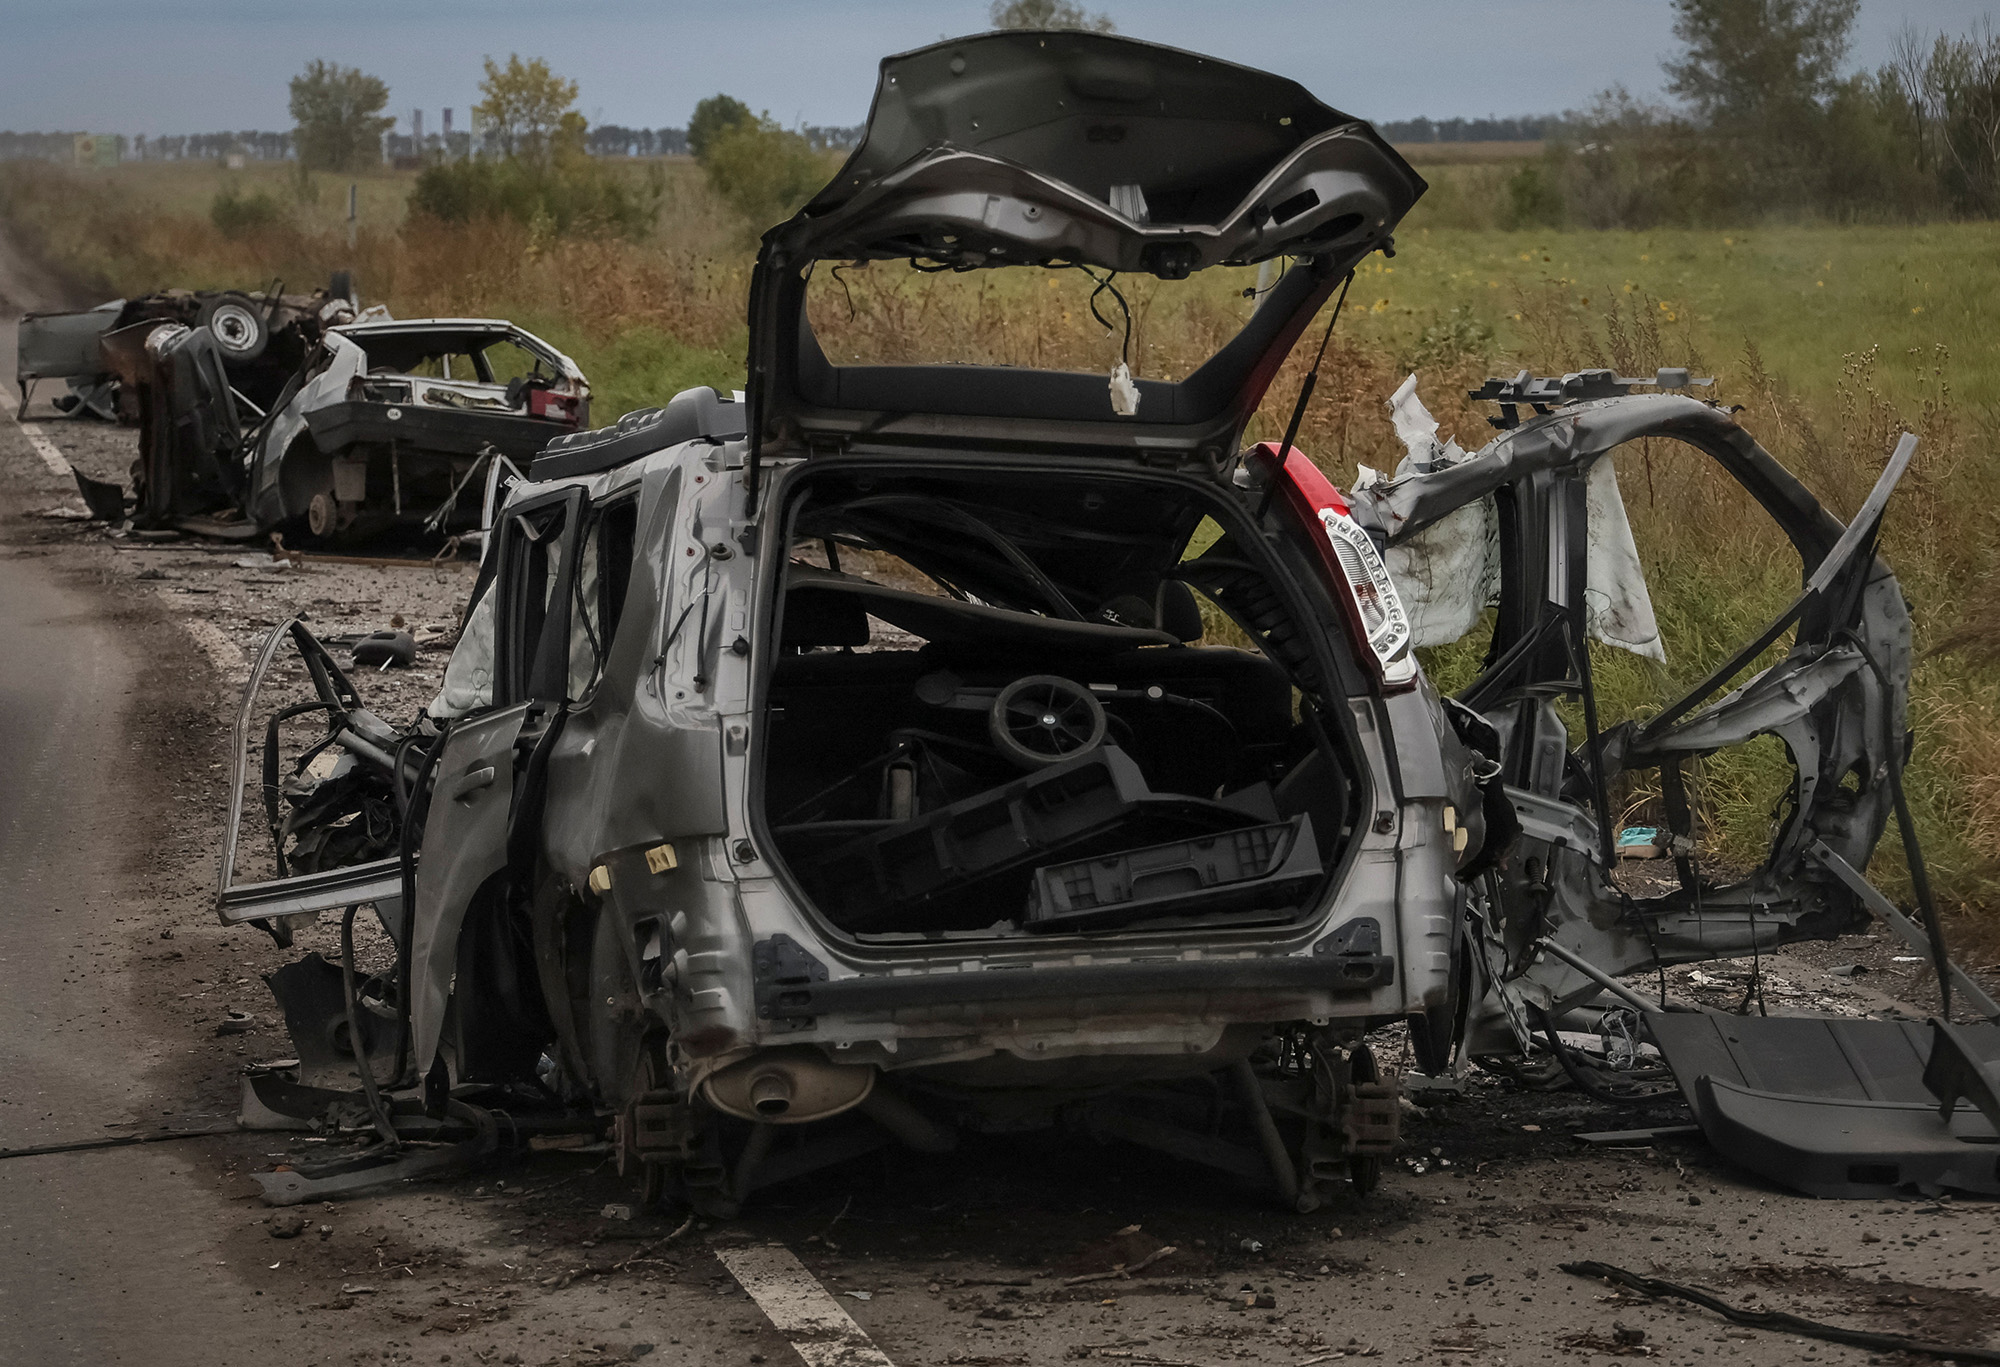 13 सितंबर को खार्किव क्षेत्र में यूक्रेन के बालाक्लिया शहर के पास एक सड़क पर कई नष्ट नागरिक कारों को देखा जाता है।